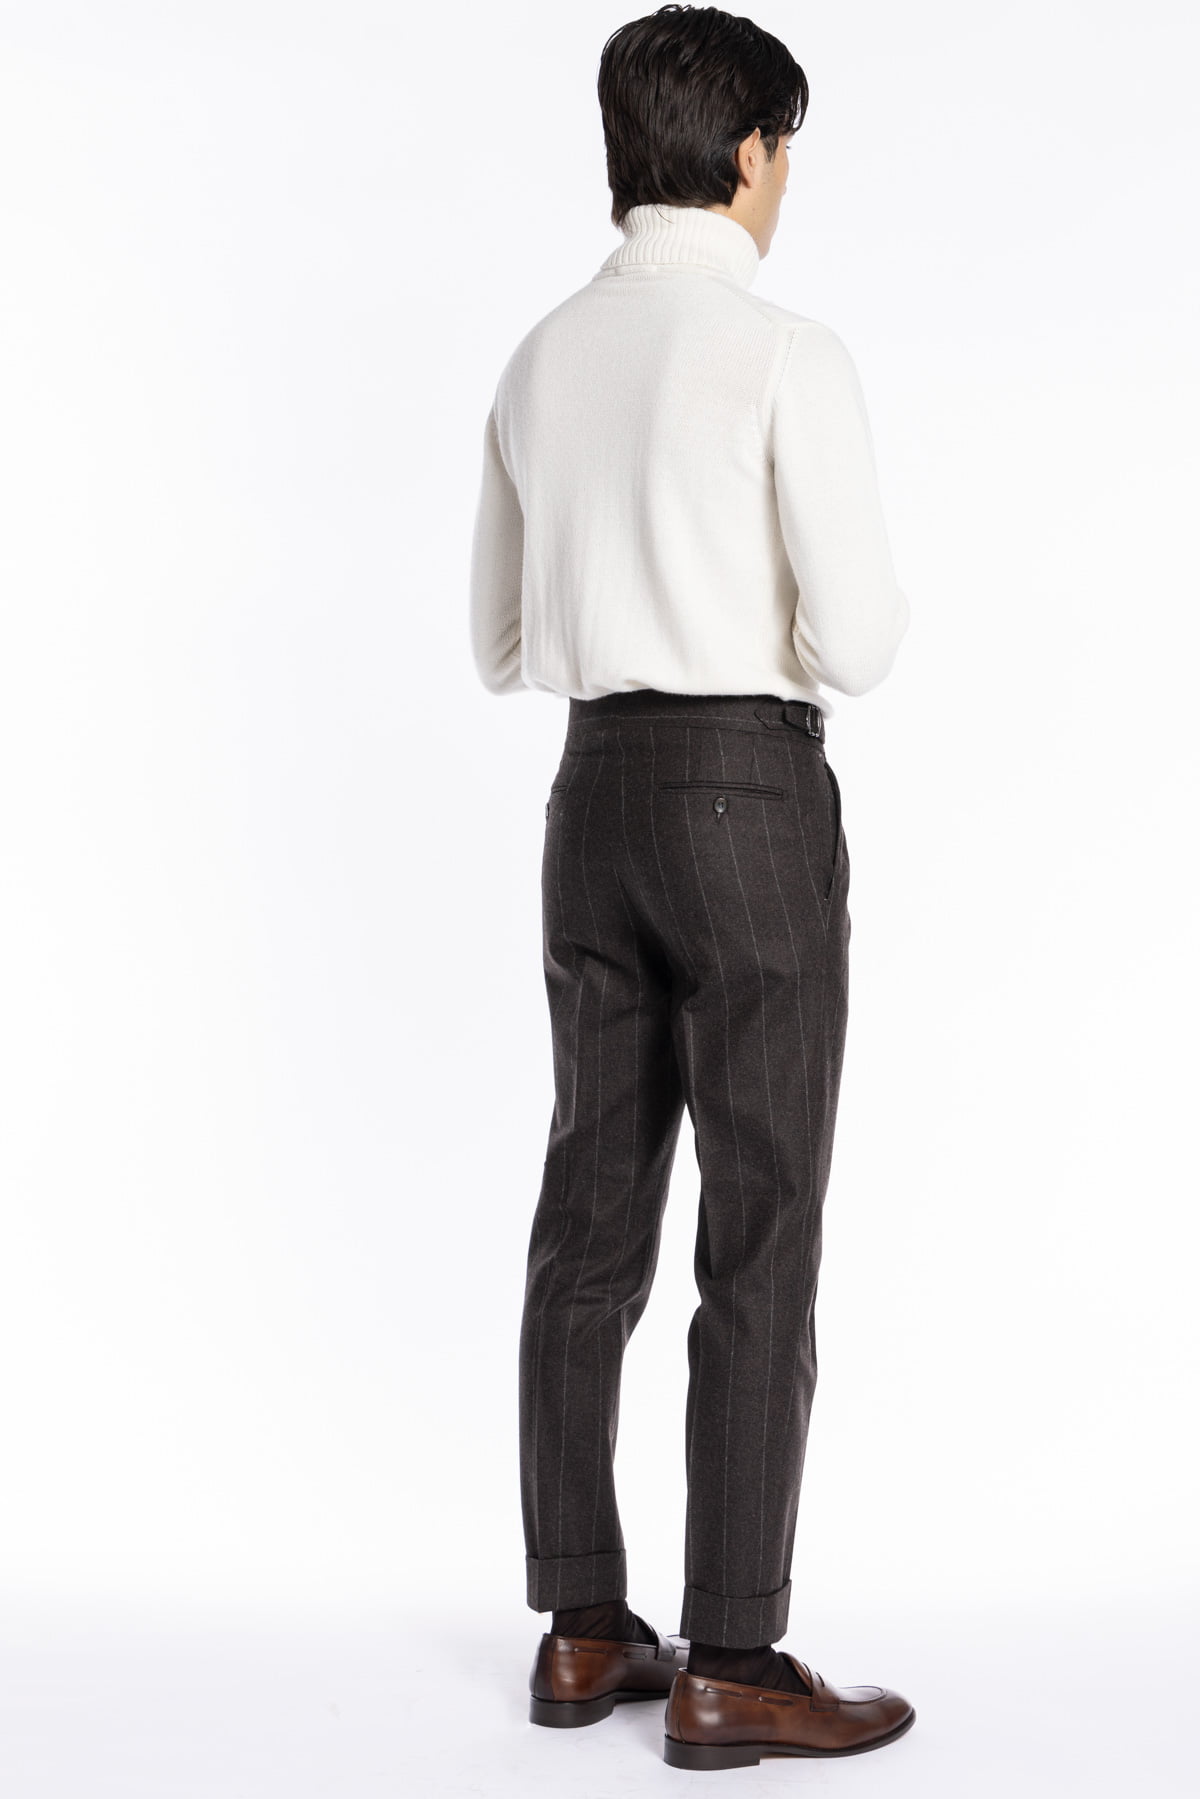 Pantalone uomo marrone gessato vita alta tasca america in lana flanella Vitale Barberis Canonico con doppia pinces e fibbie laterali regolabili